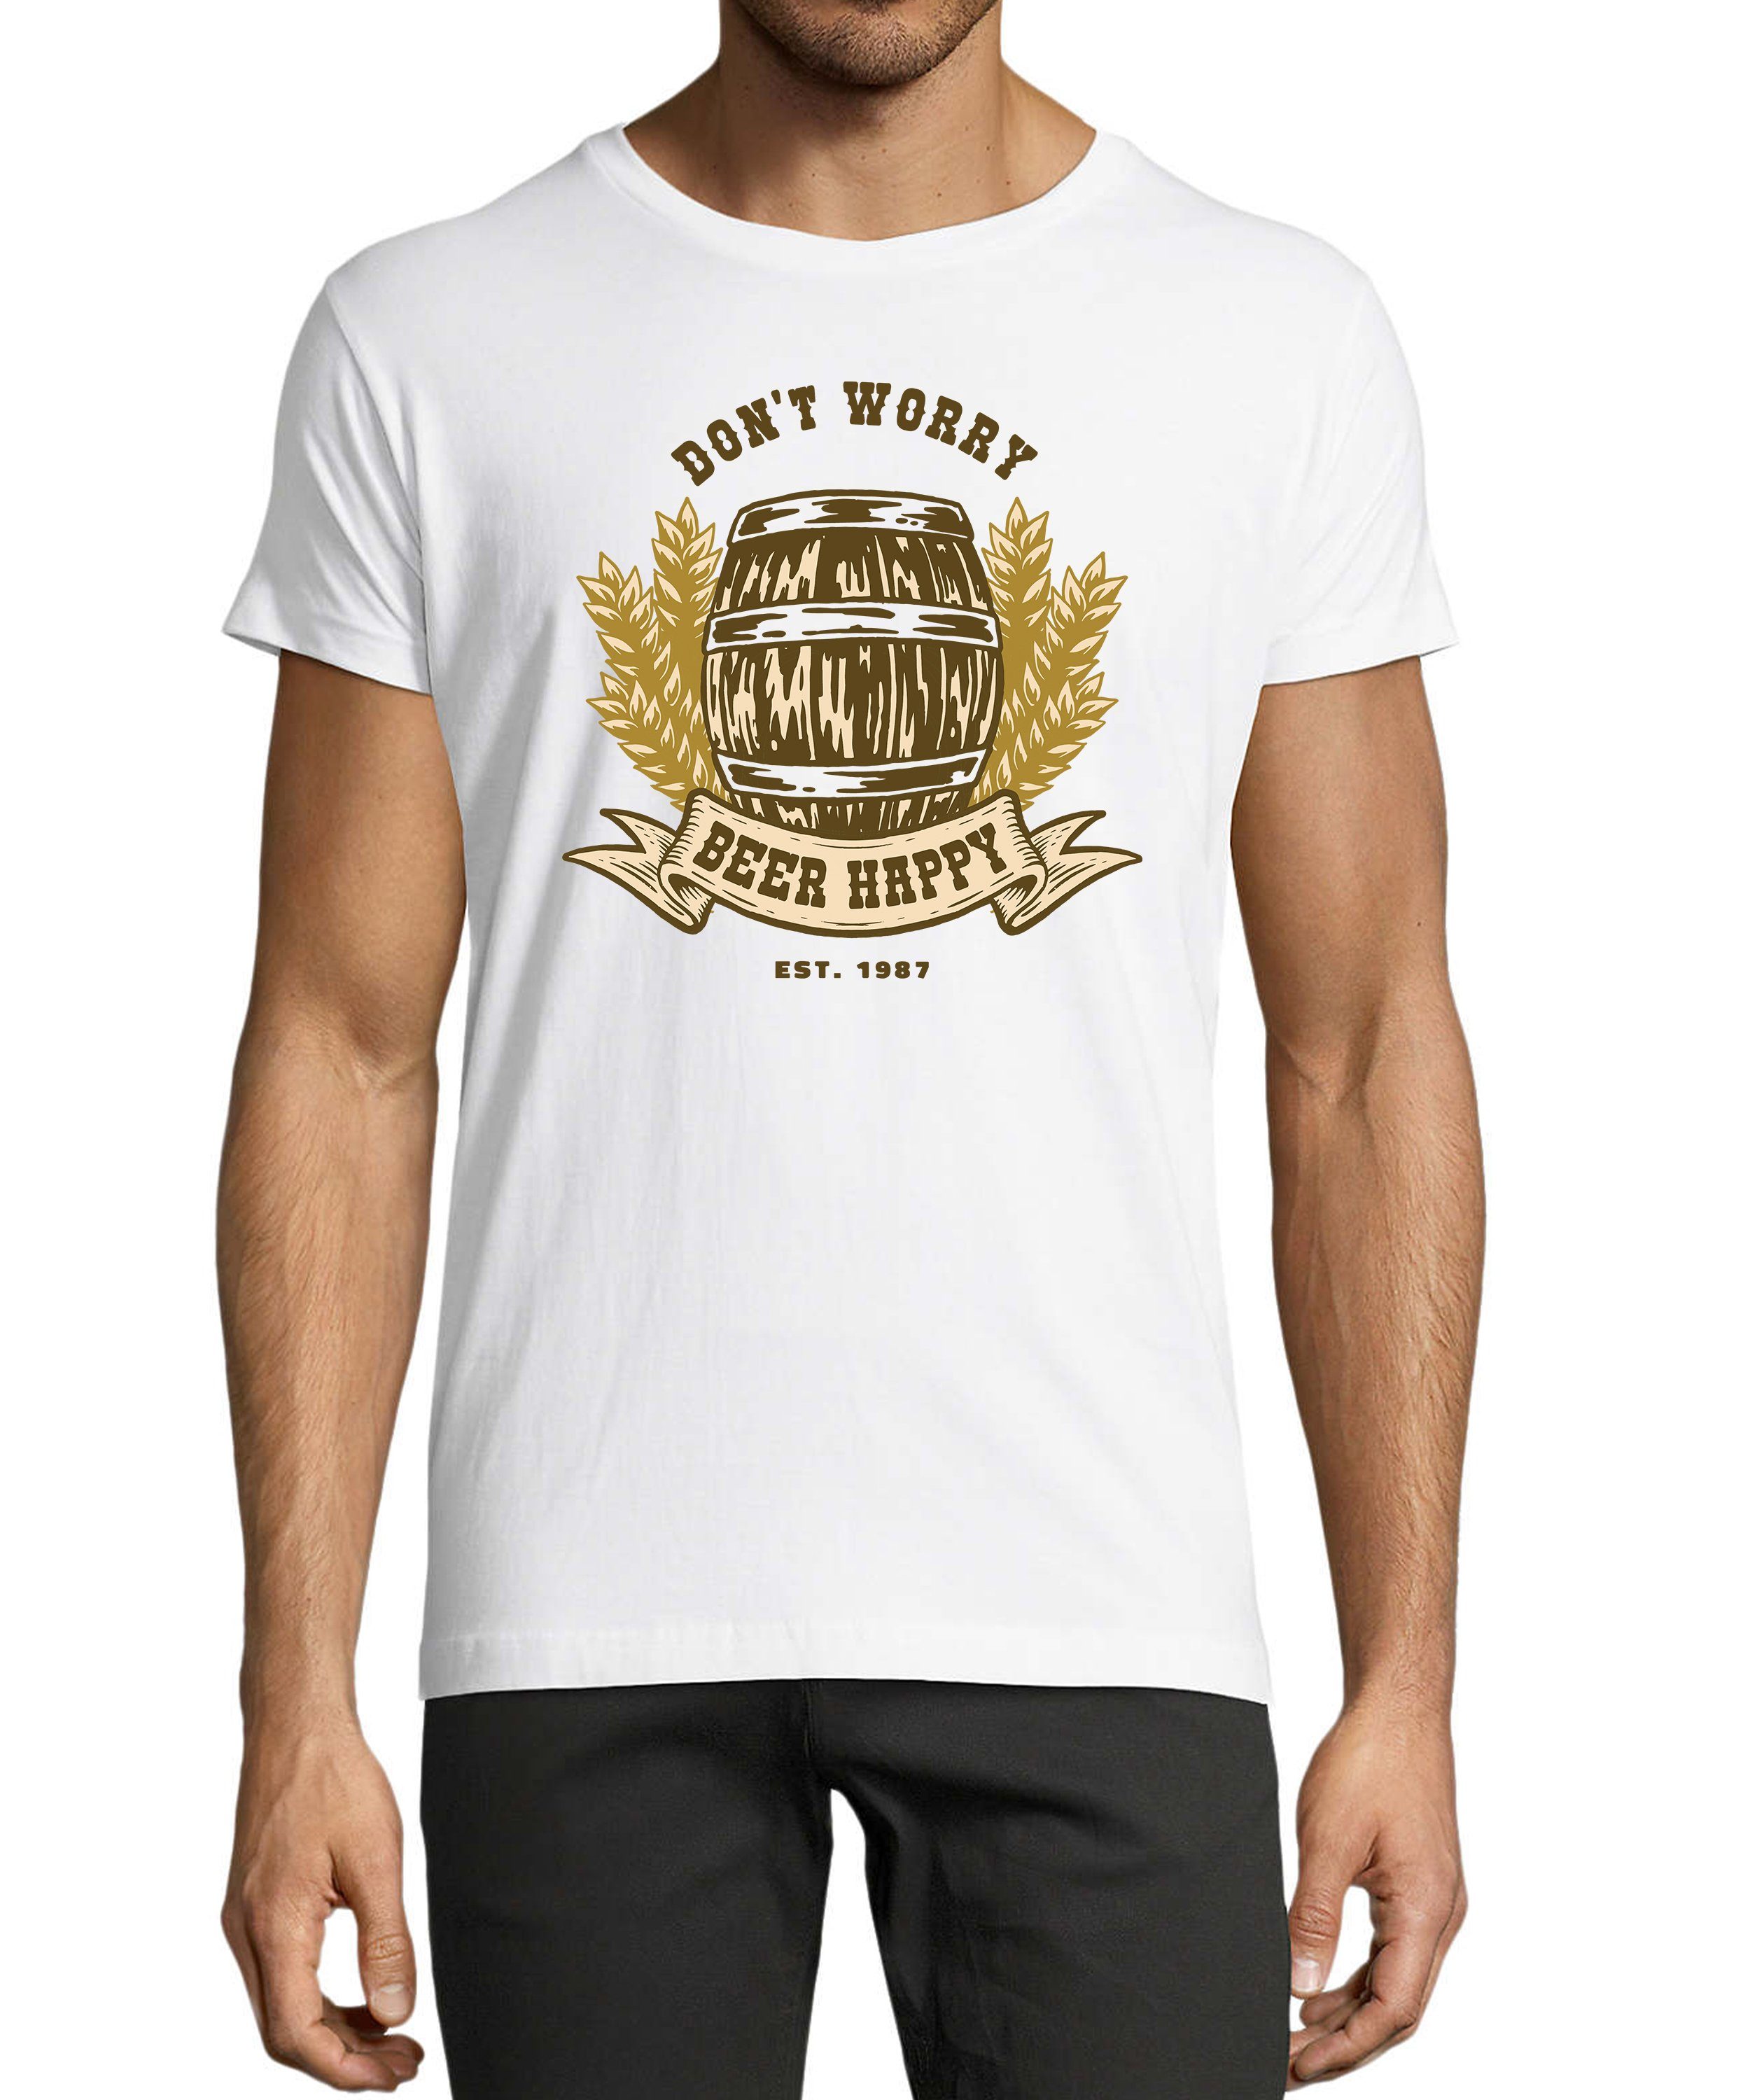 MyDesign24 T-Shirt Herren Oktoberfest Shirt mit - Regular Spruch Fit, mit Aufdruck Bierfass print Baumwollshirt weiss i301